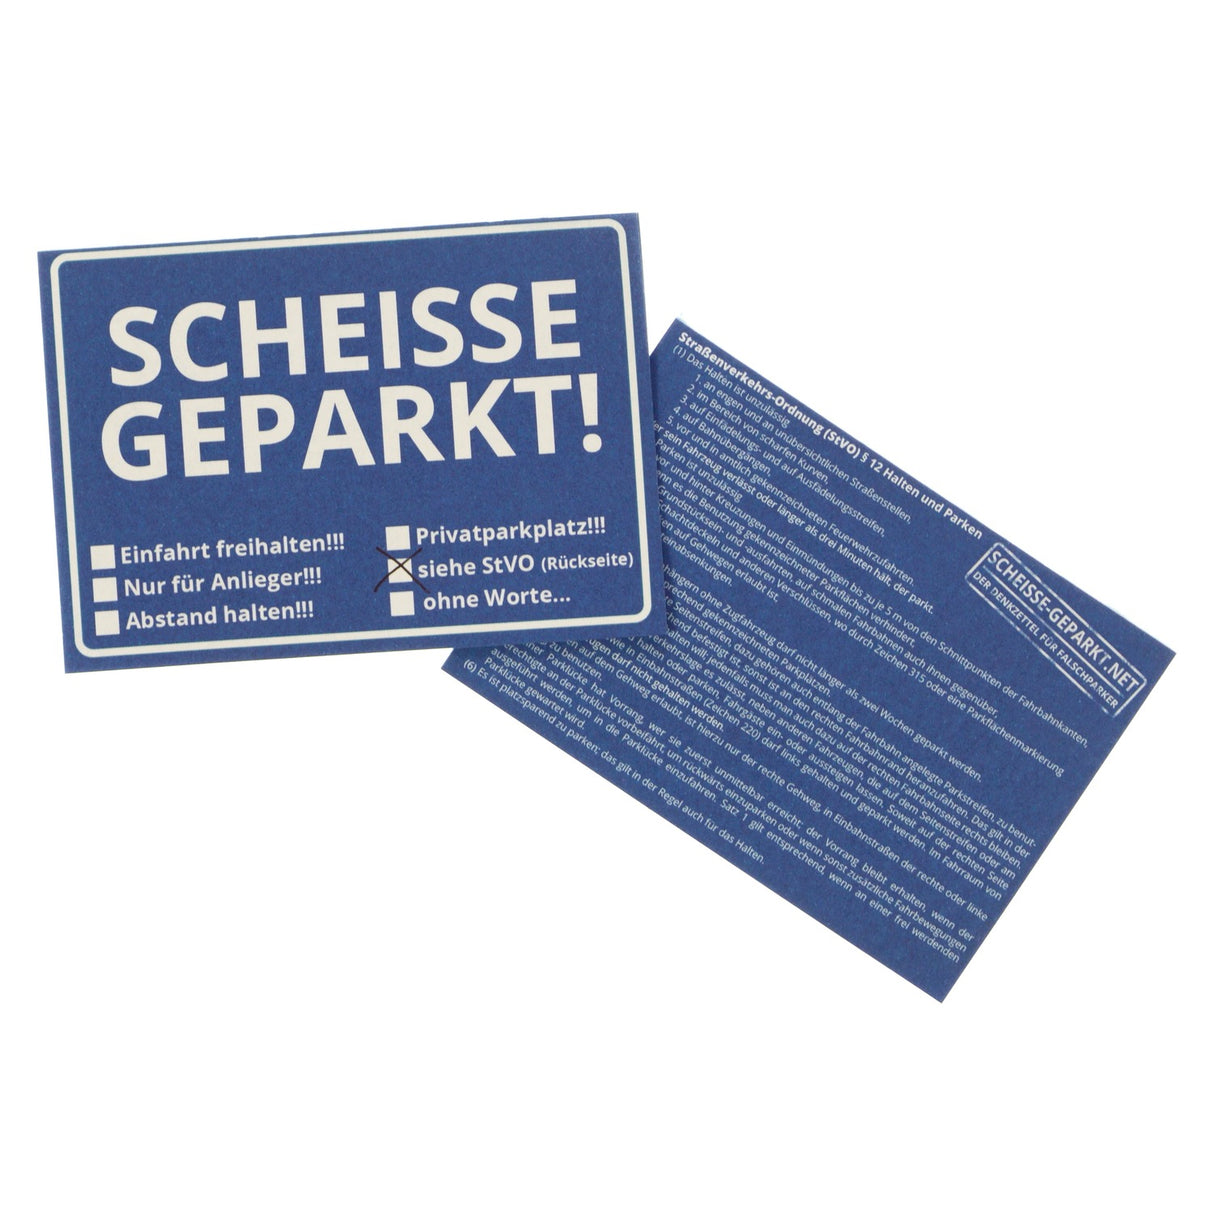 Scheiße geparkt Klebezettel für Falschparker I younikat®, 5,90 €